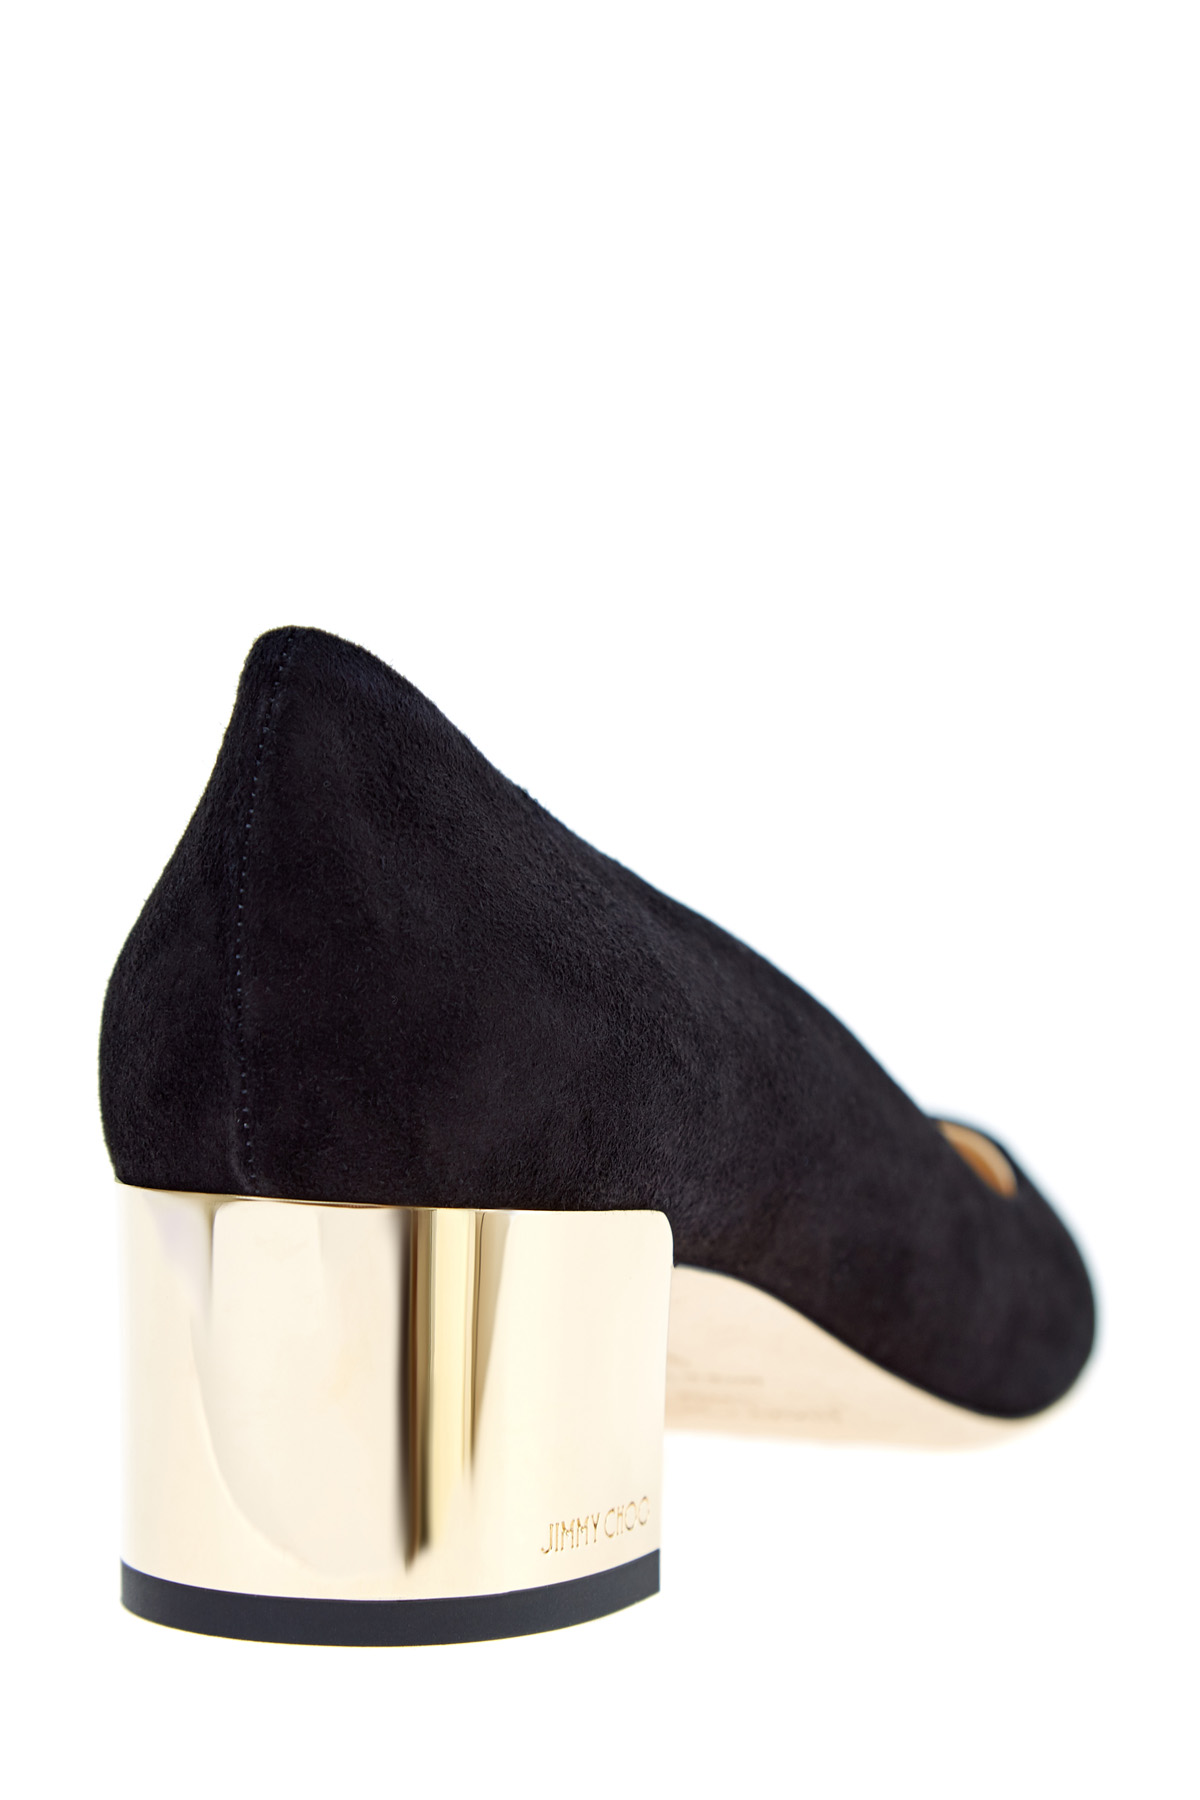 Туфли Jessie на каблуке с золотистым напылением и монограммой JIMMY CHOO, цвет черный, размер 37;37.5;38.5;39 - фото 4